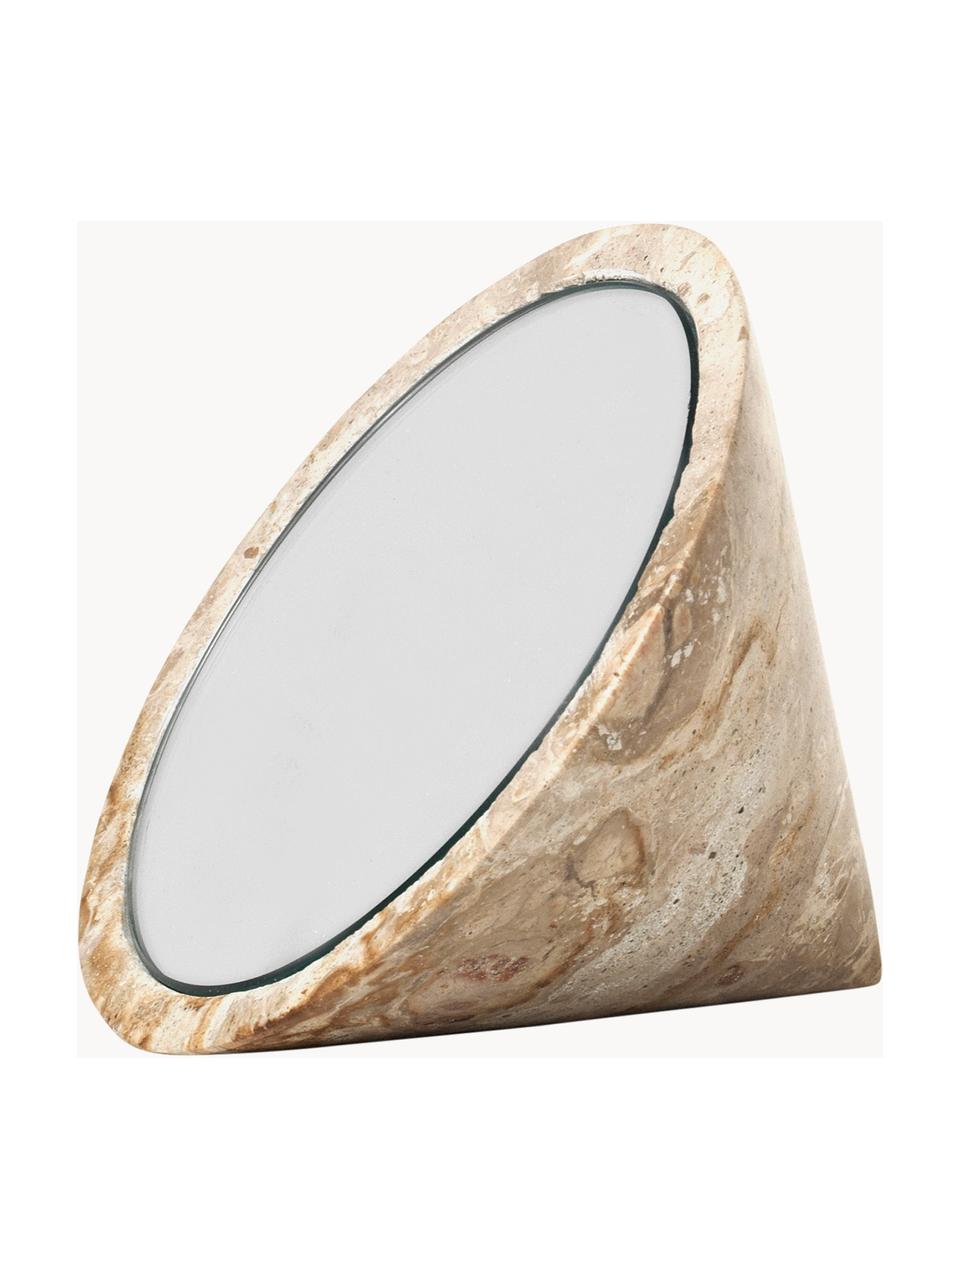 Mramorové dekorativní zrcadlo Spinning Top, Zrcadlo, mramor, Béžová, mramorovaná, Ø 14 cm